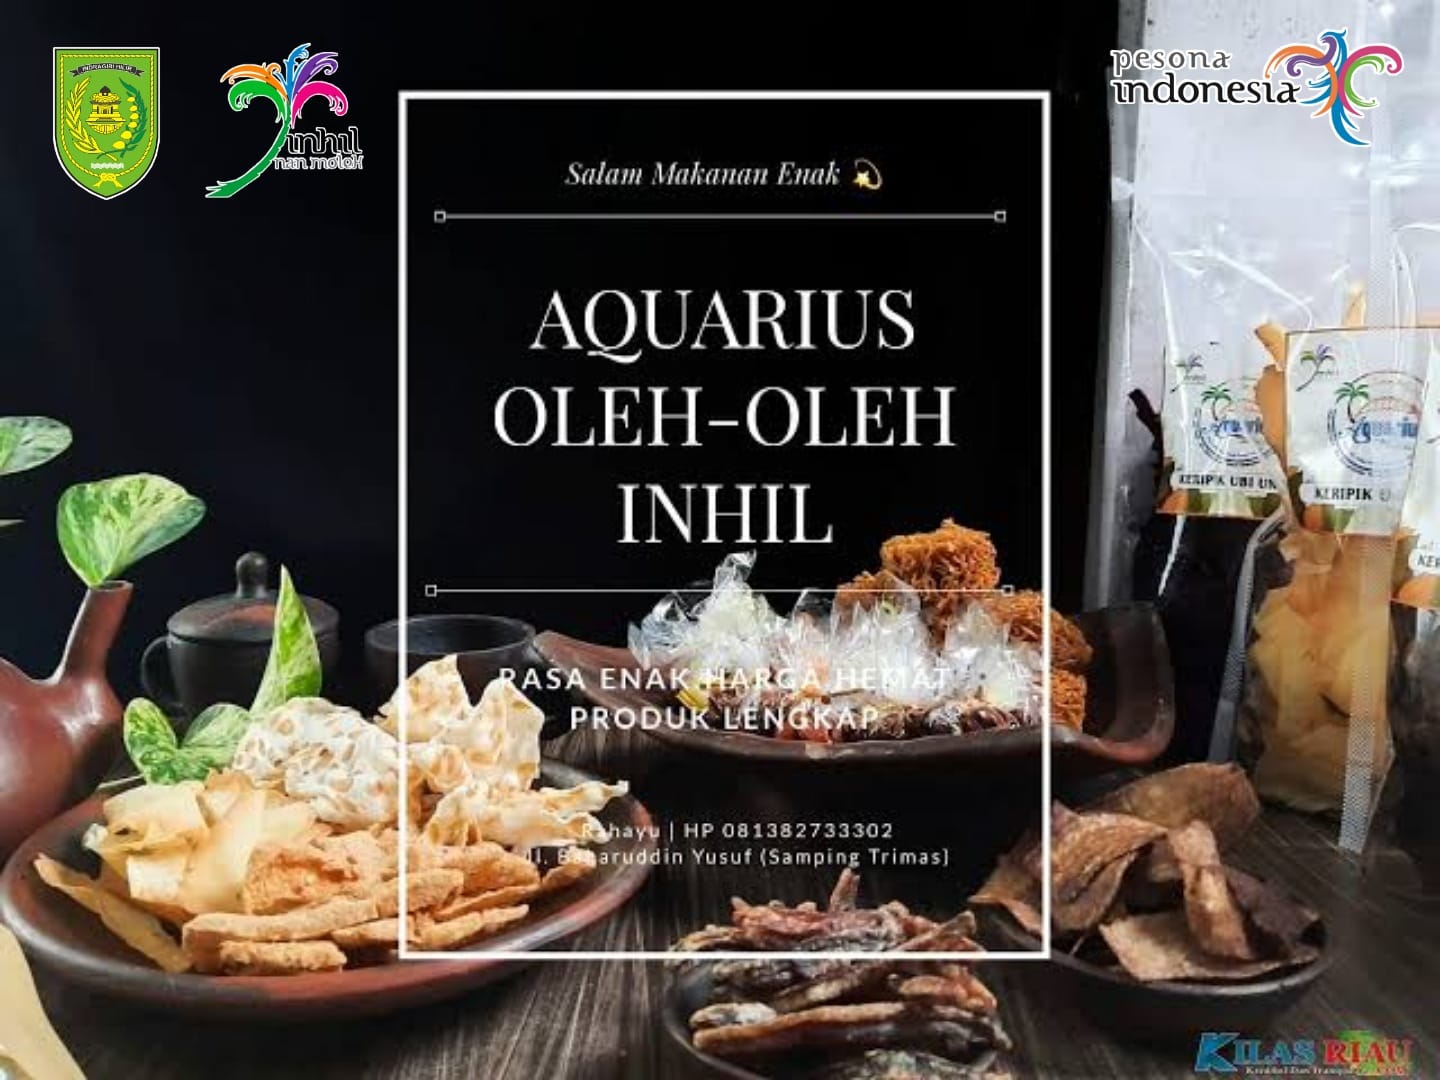 Toko Oleh-oleh Aquarius, Sediakan Bermacam Makanan Khas Inhil yang Memanjakan Wisatawan di Tembilahan